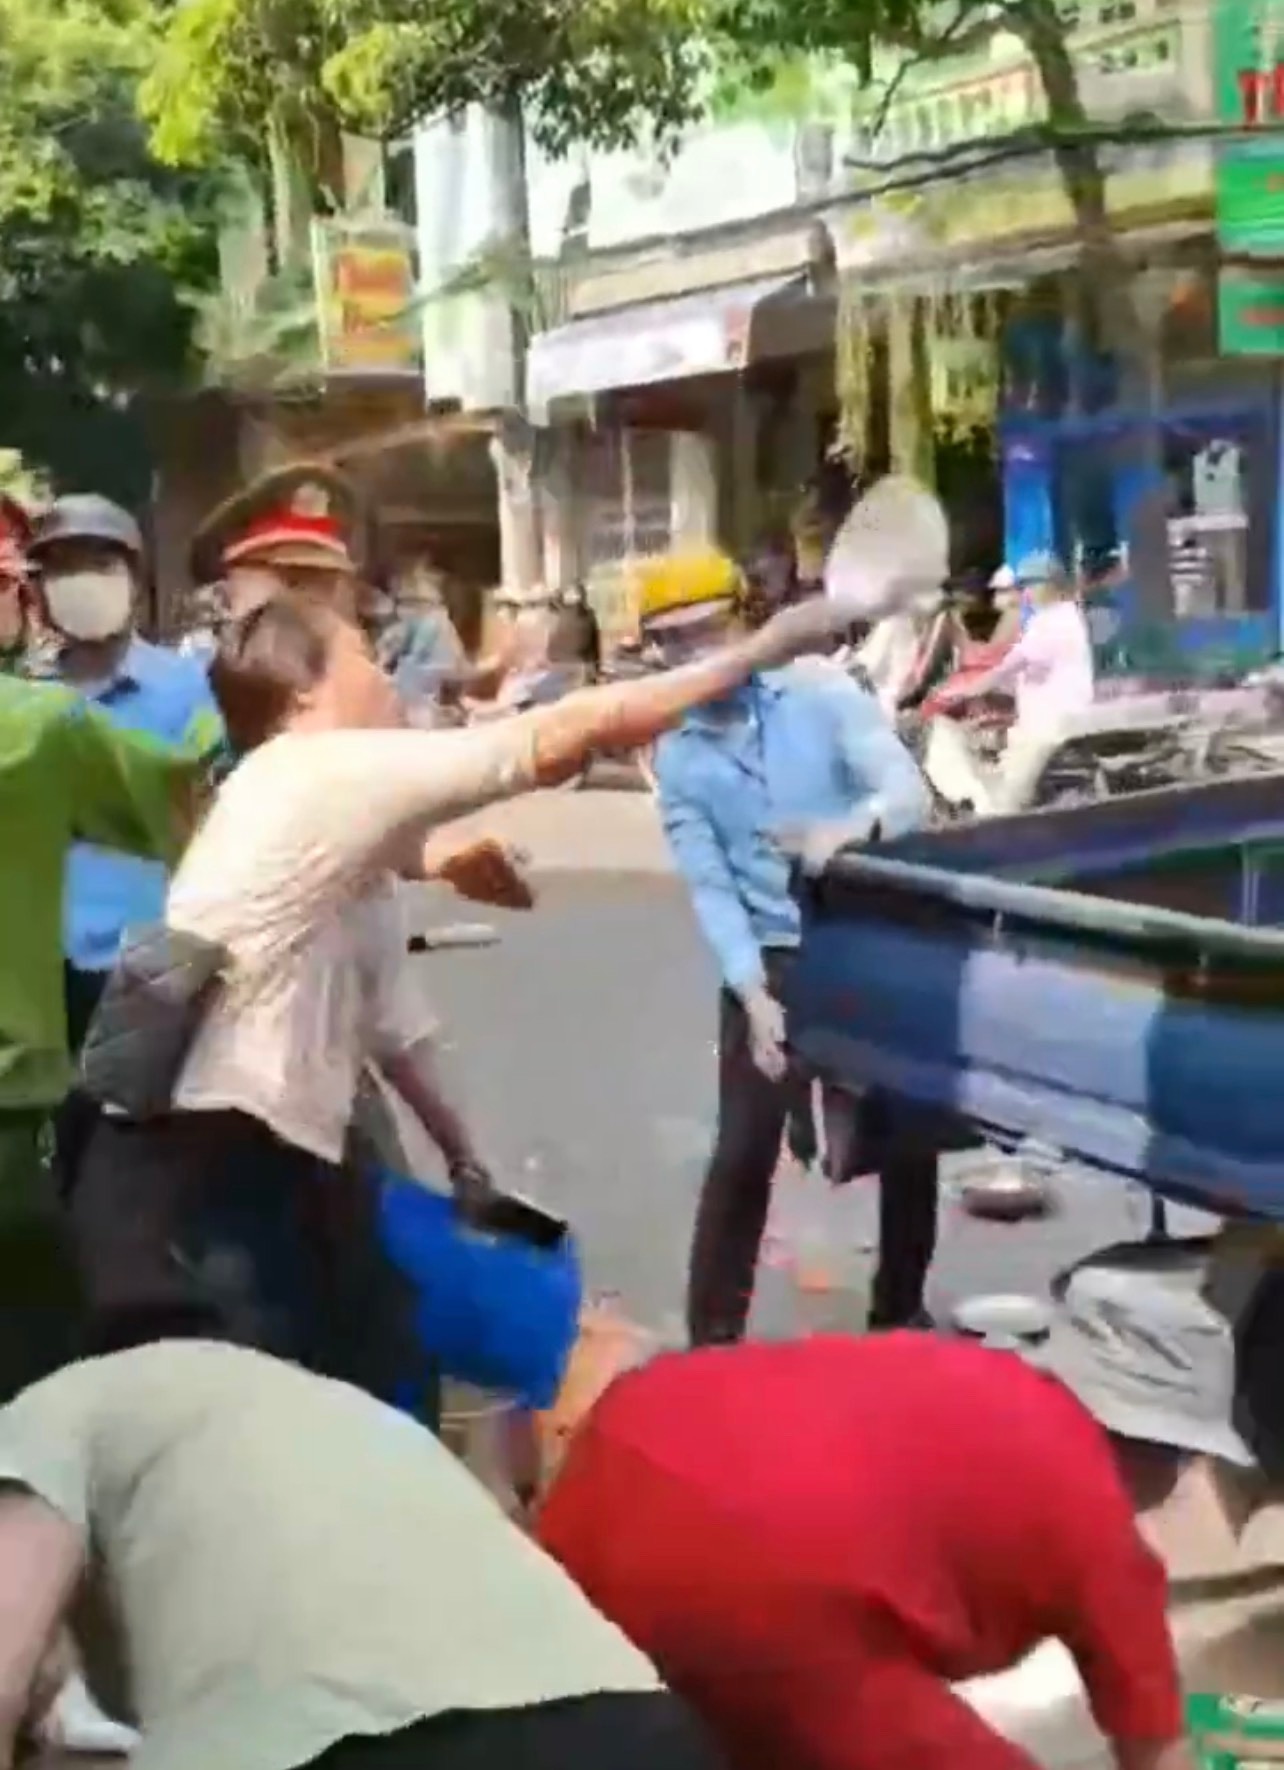 Al confiscarles su vehículo e invadir la acera, 3 mujeres tiraron platos por todos lados - Foto 1.